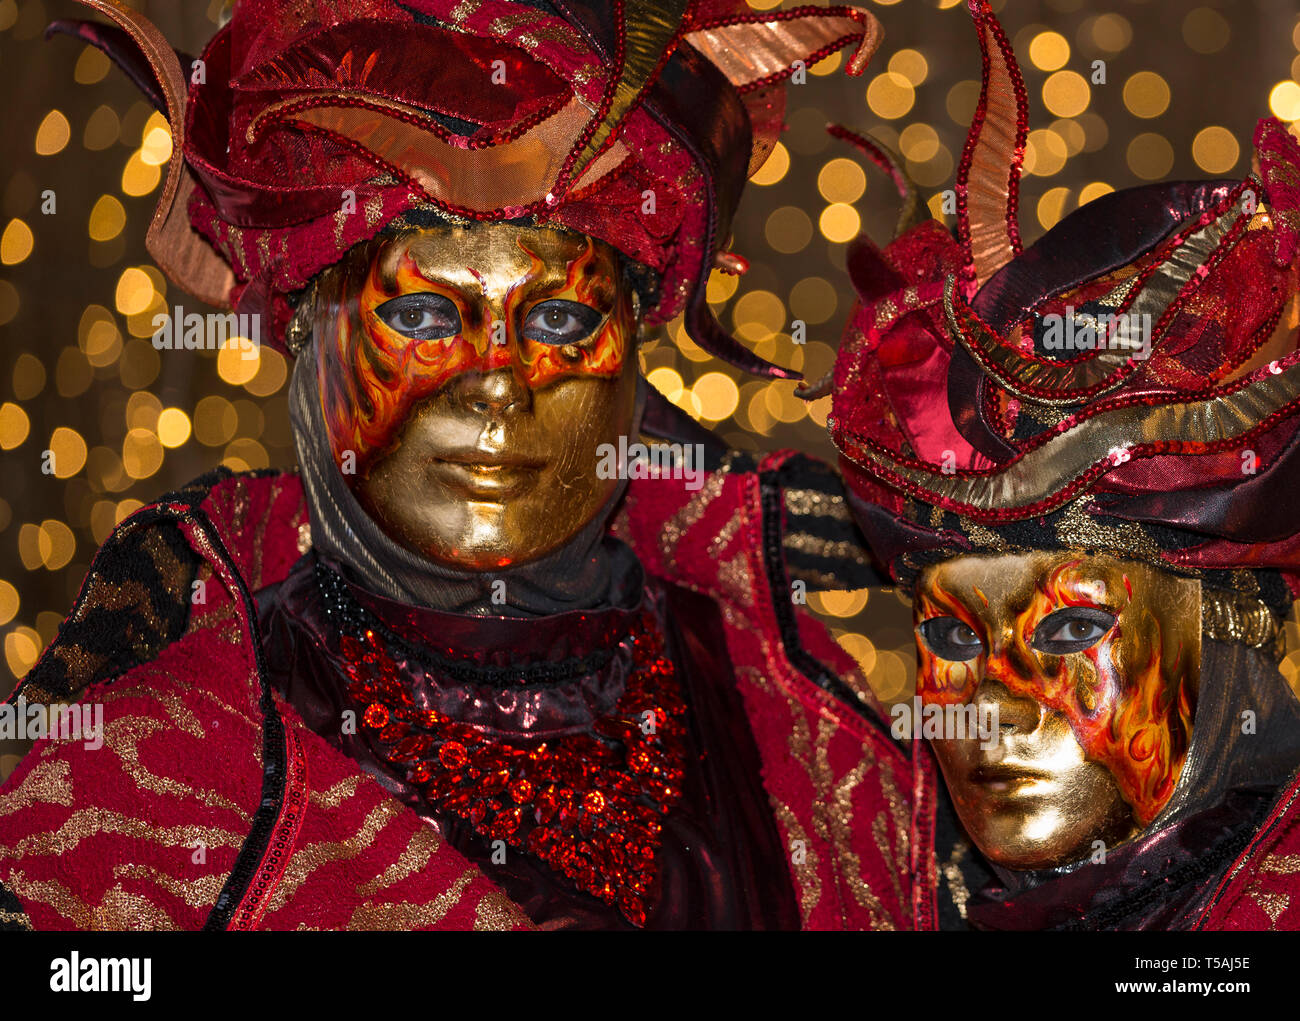 Karneval in Venedig paar Feuer rot tragen Masken und Kostüme, Italien, Nachtporträt mit bokeh Lichter Hintergrund Stockfoto